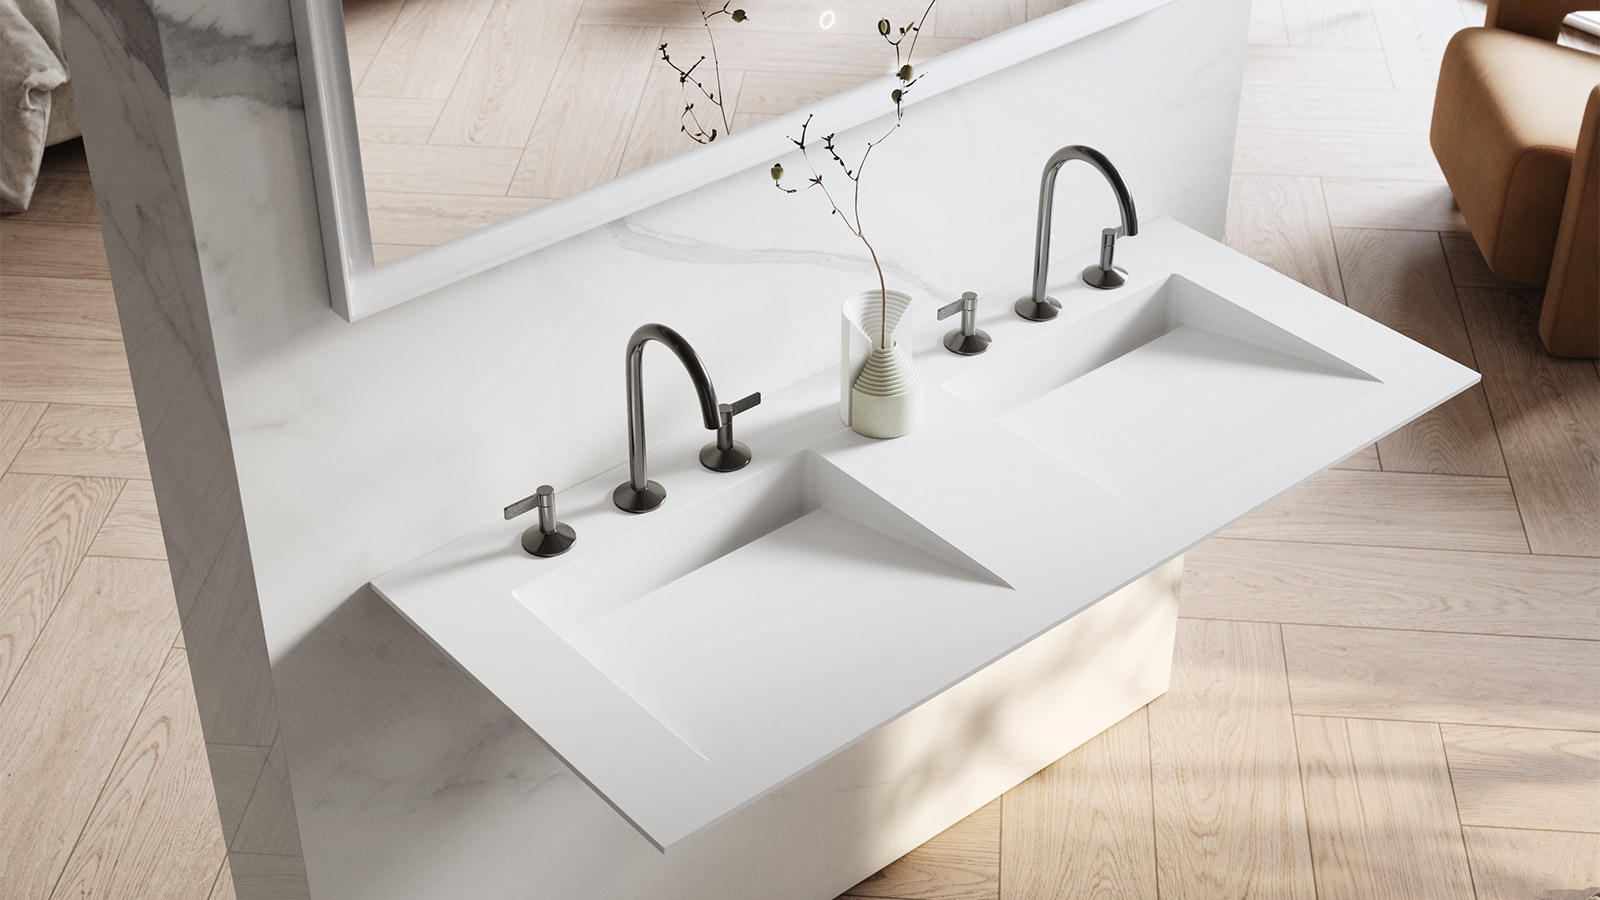 NER, la nouvelle collection de plans vasque et meubles de salle de bain conçue par Fran Silvestre.